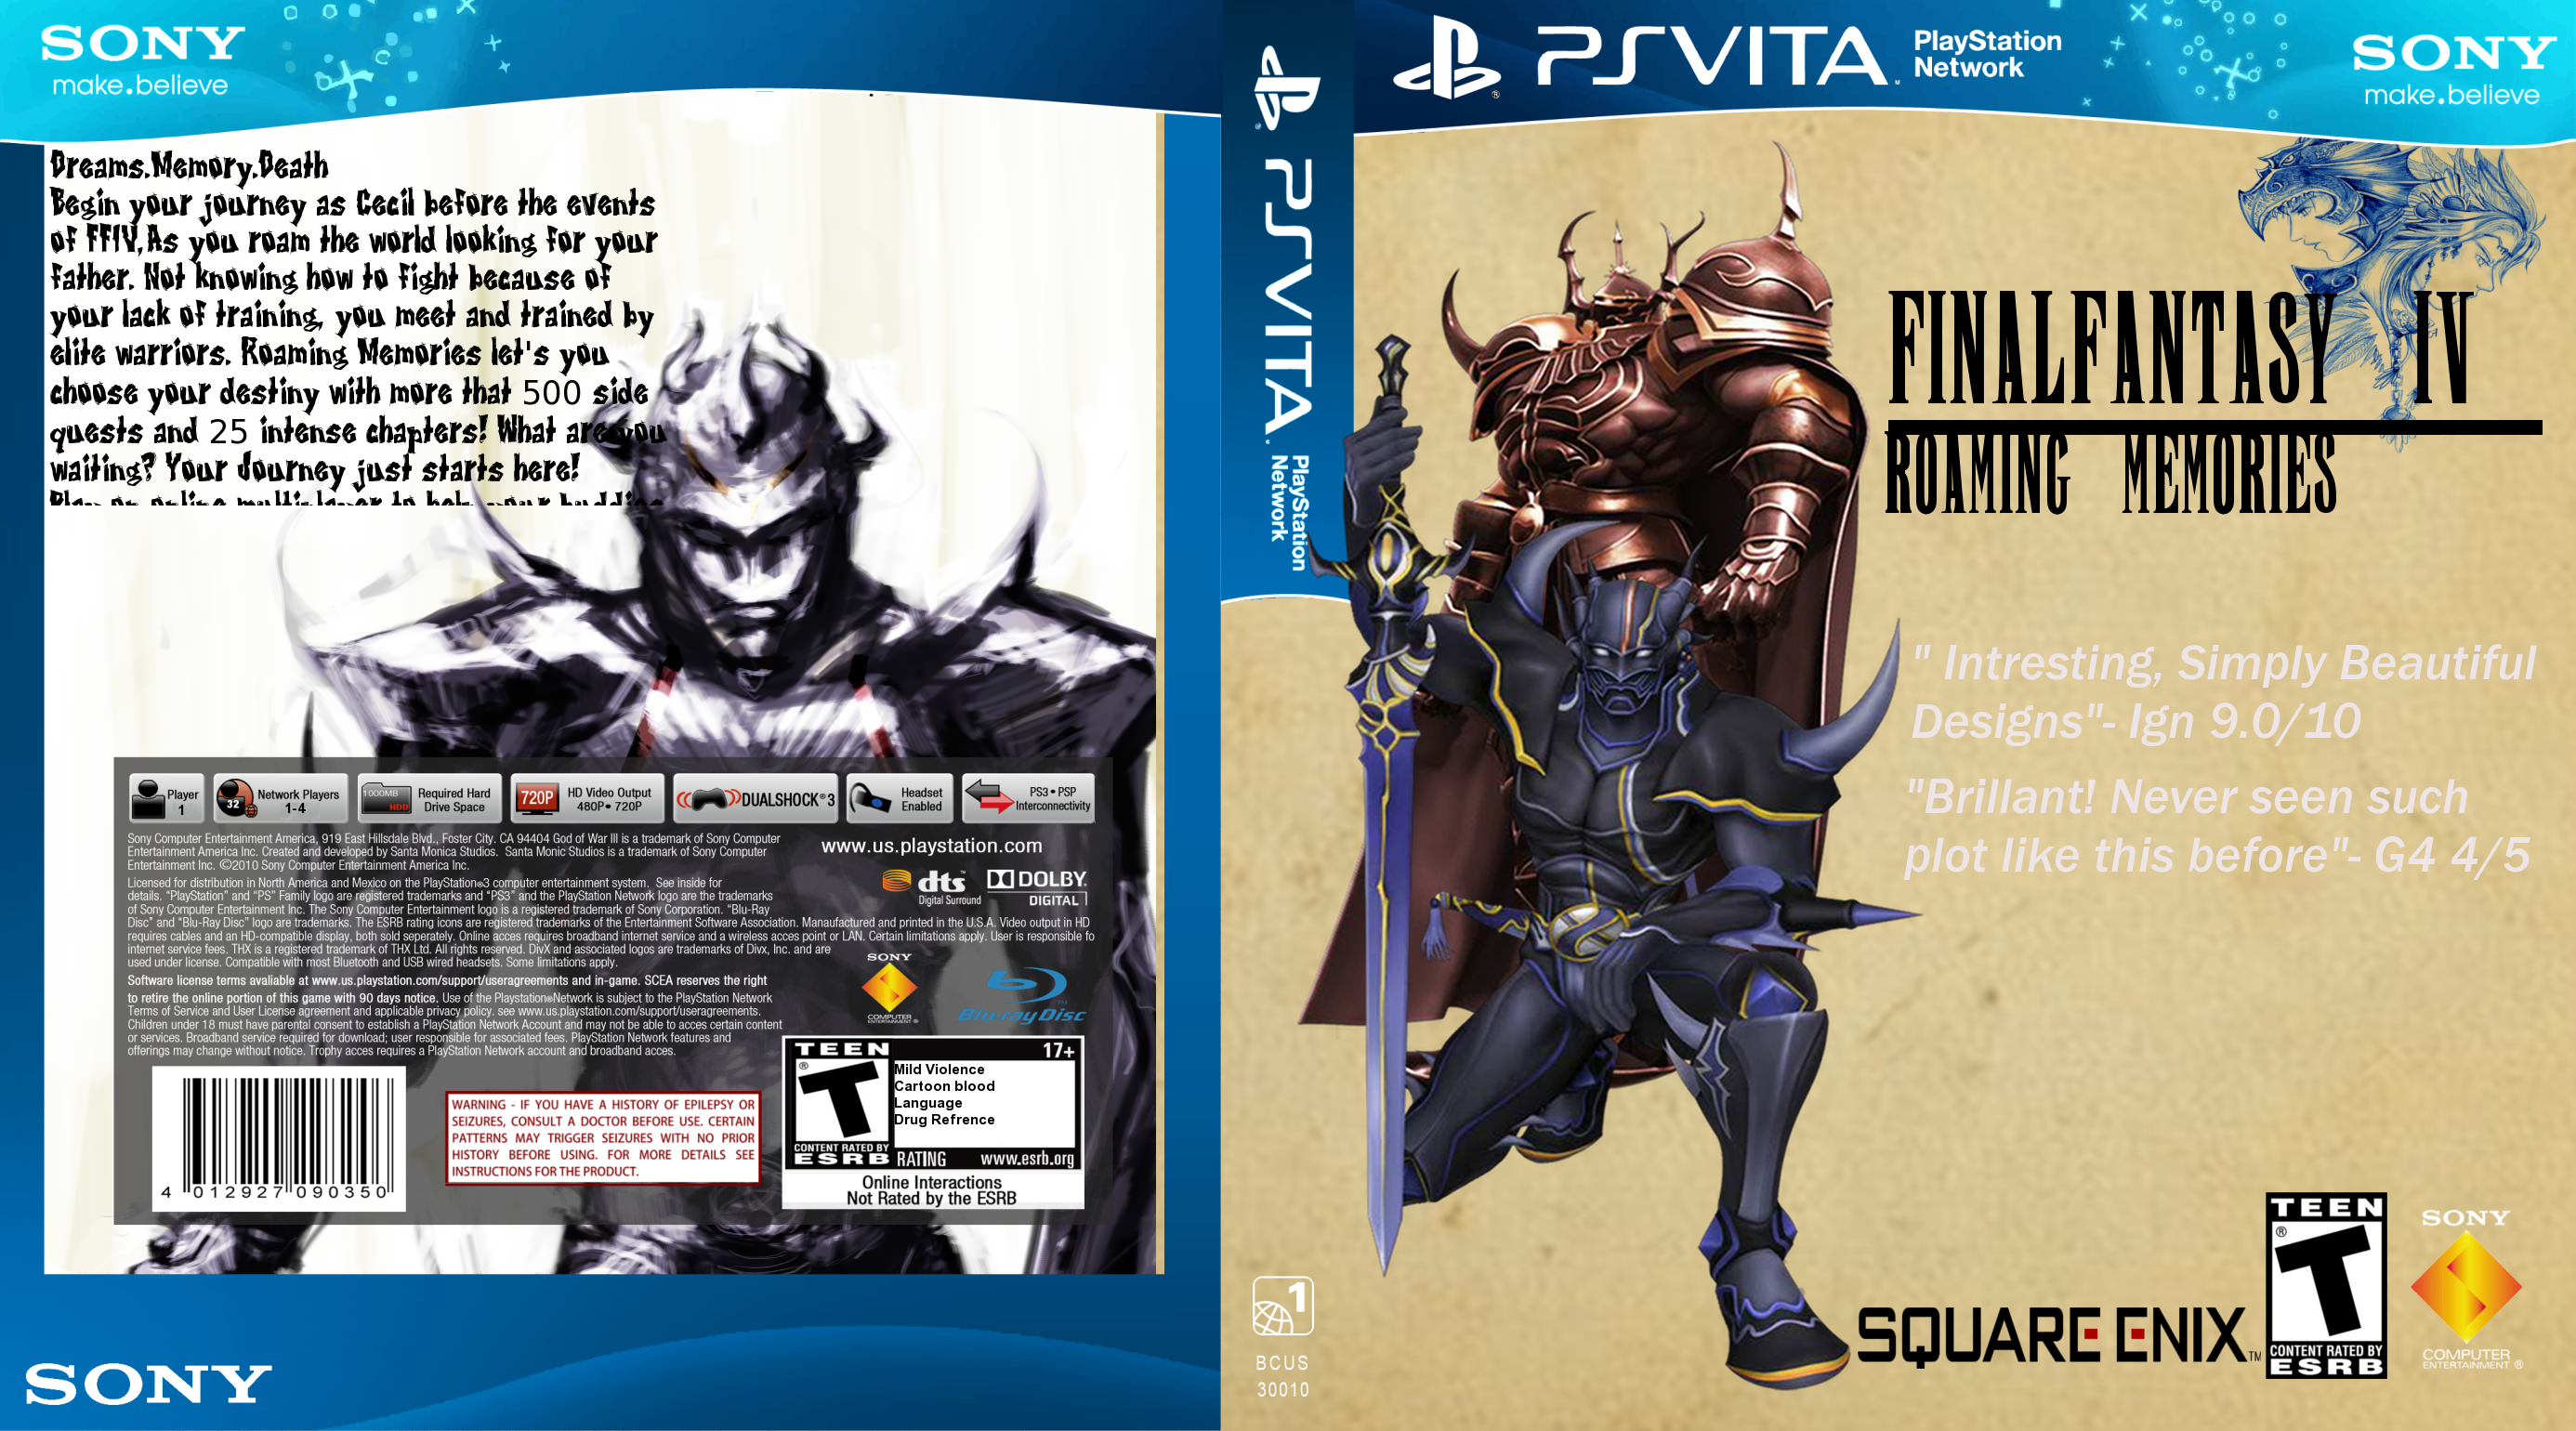 Final Fantasy IV: Roaming Memories box cover